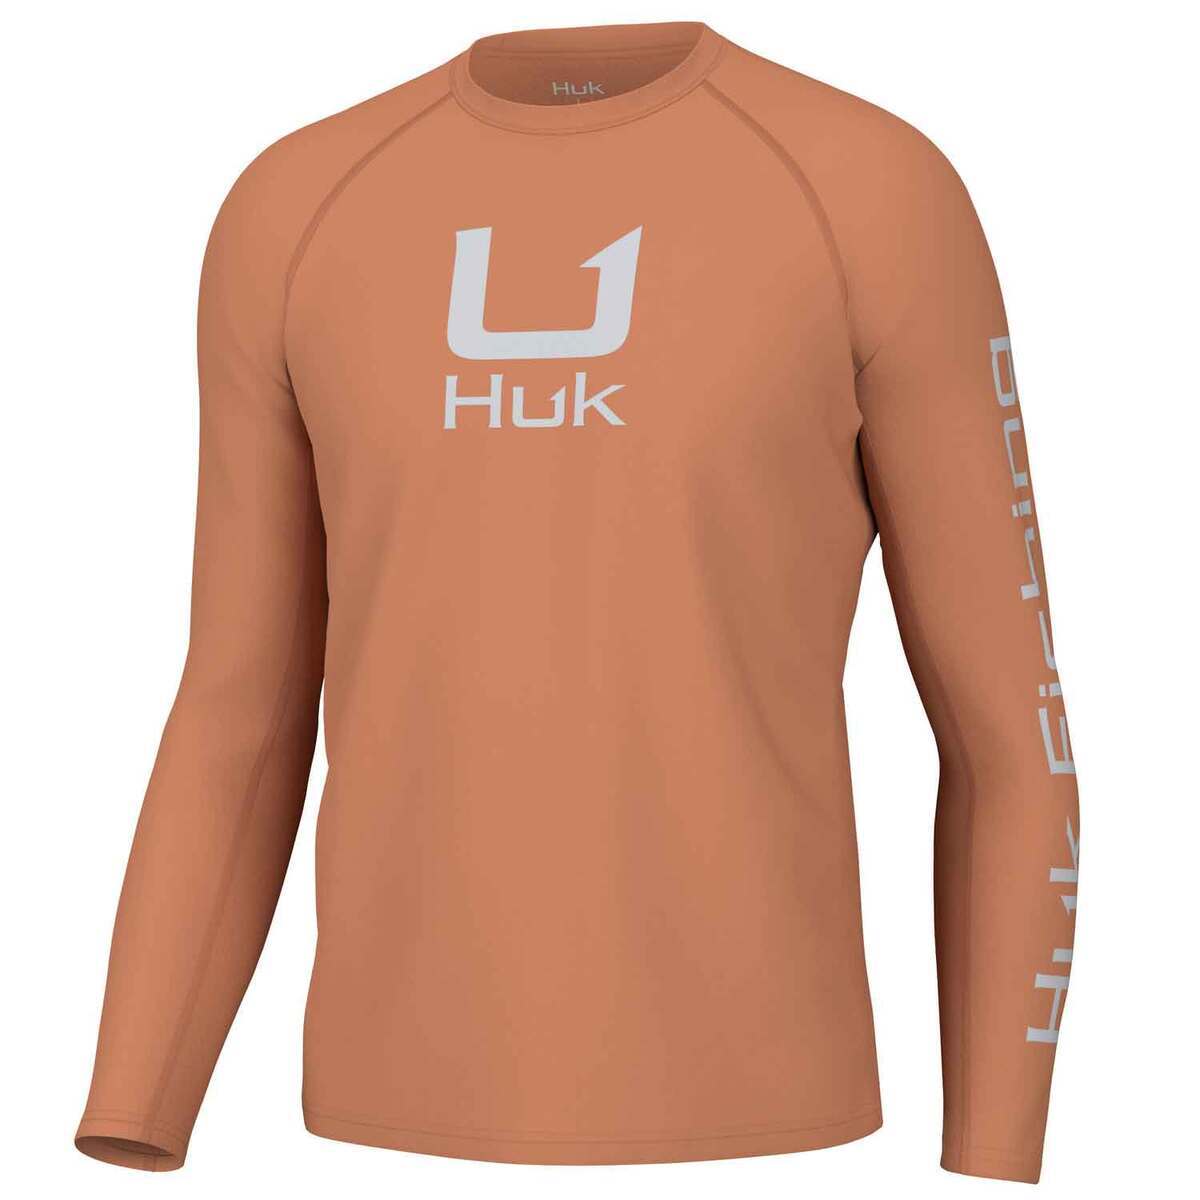 Huk Men's Icon Crew Long Sleeve Fishing Shirt - Sunburn - XL